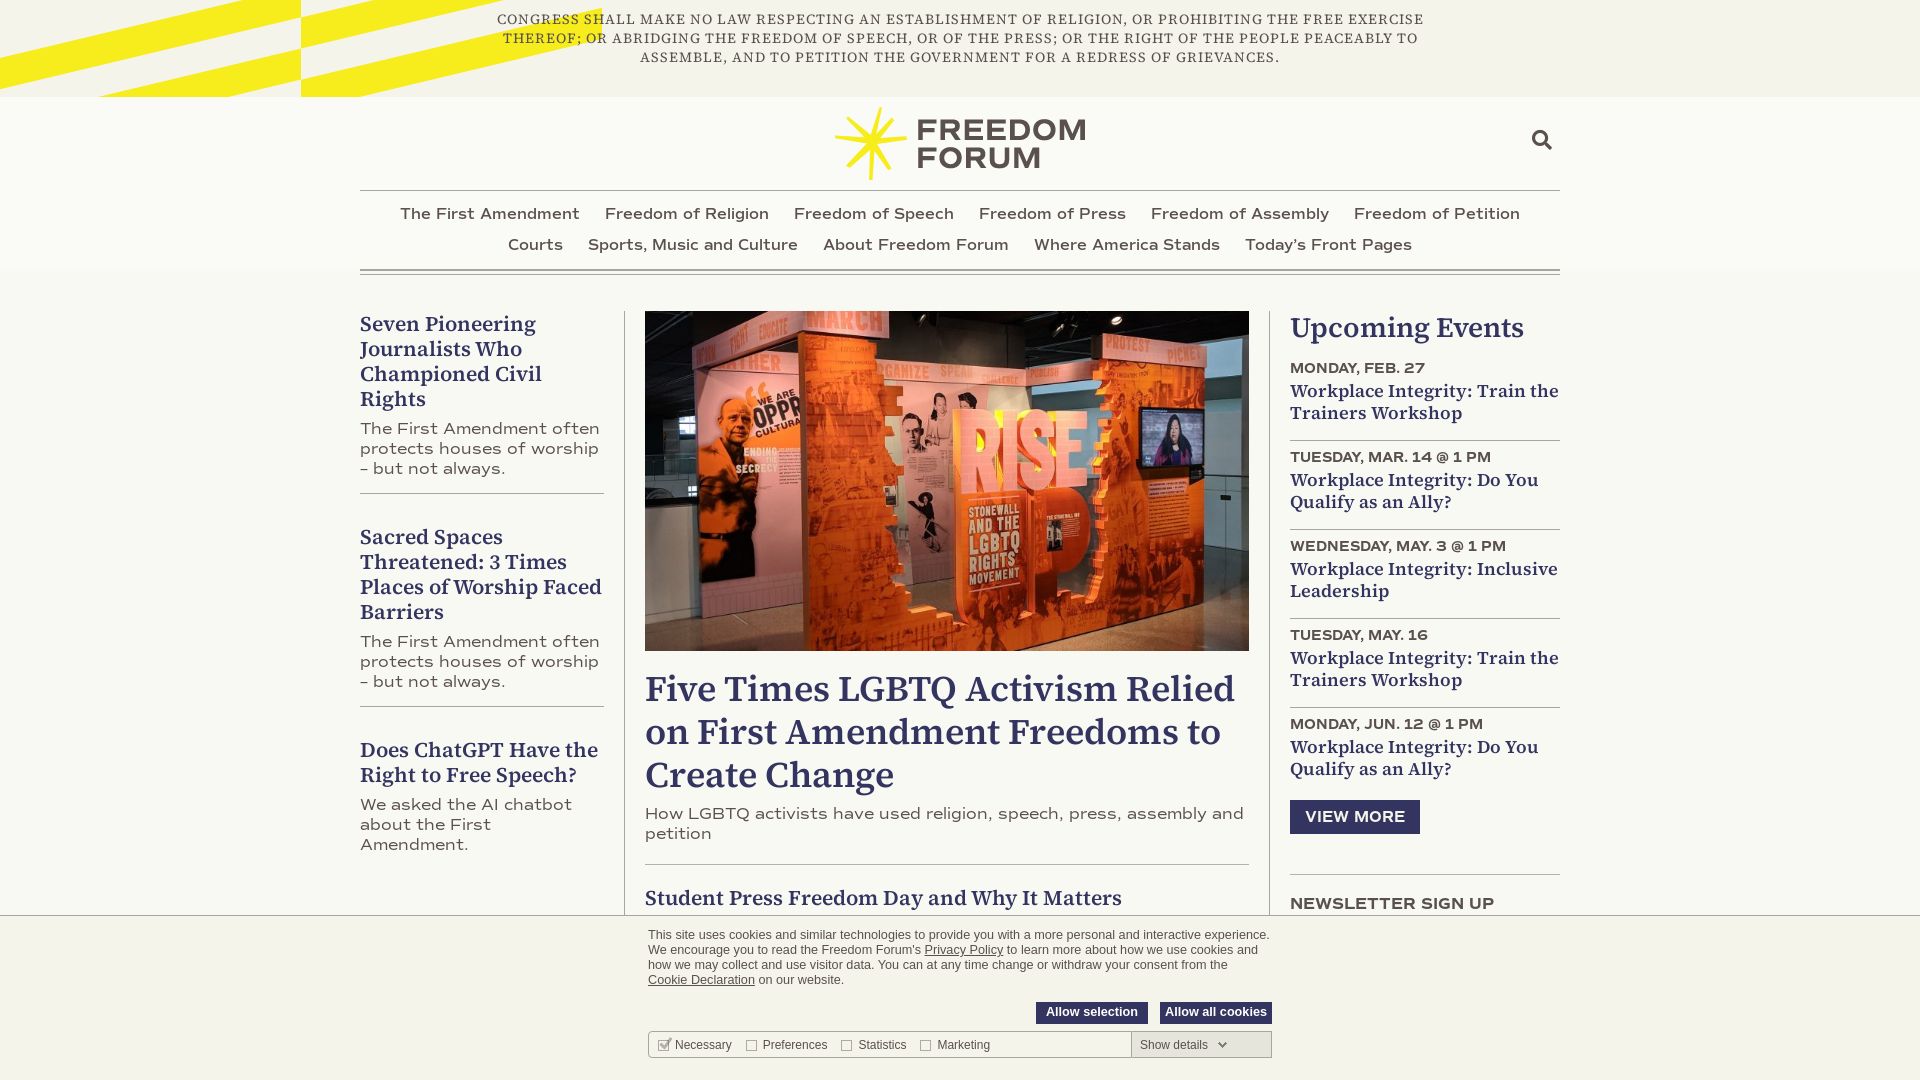 Estado web freedomforum.org está   ONLINE